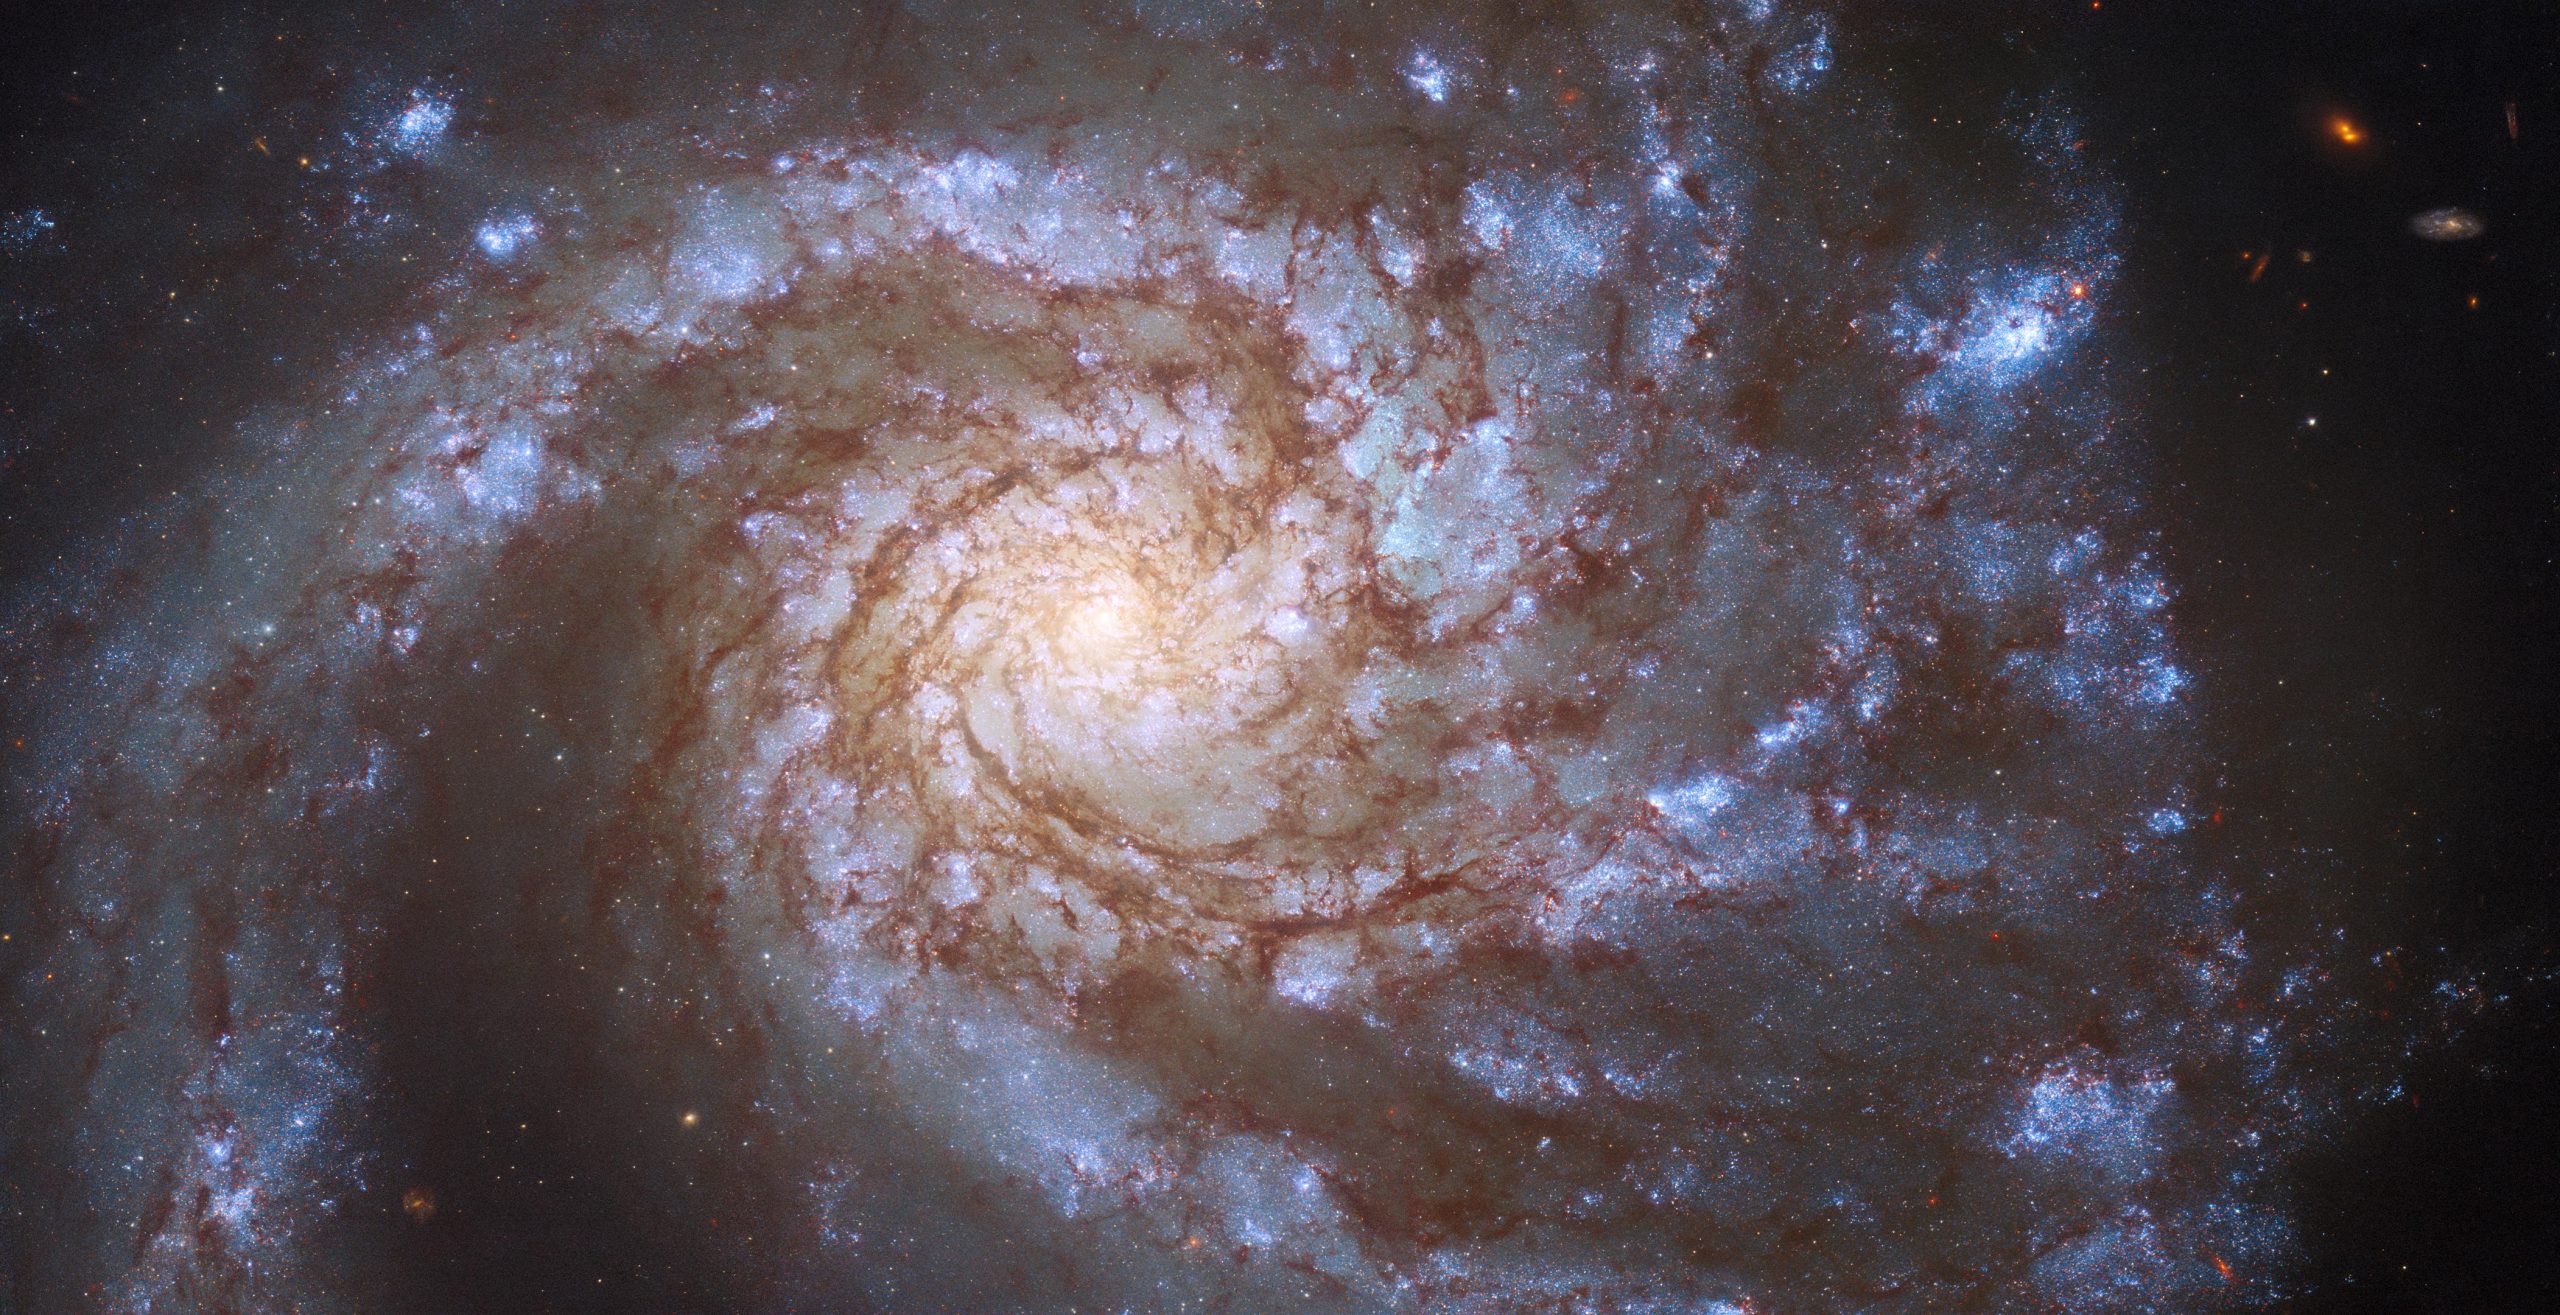 哈勃太空望远镜拍摄的后发座“大设计”螺旋星系M99